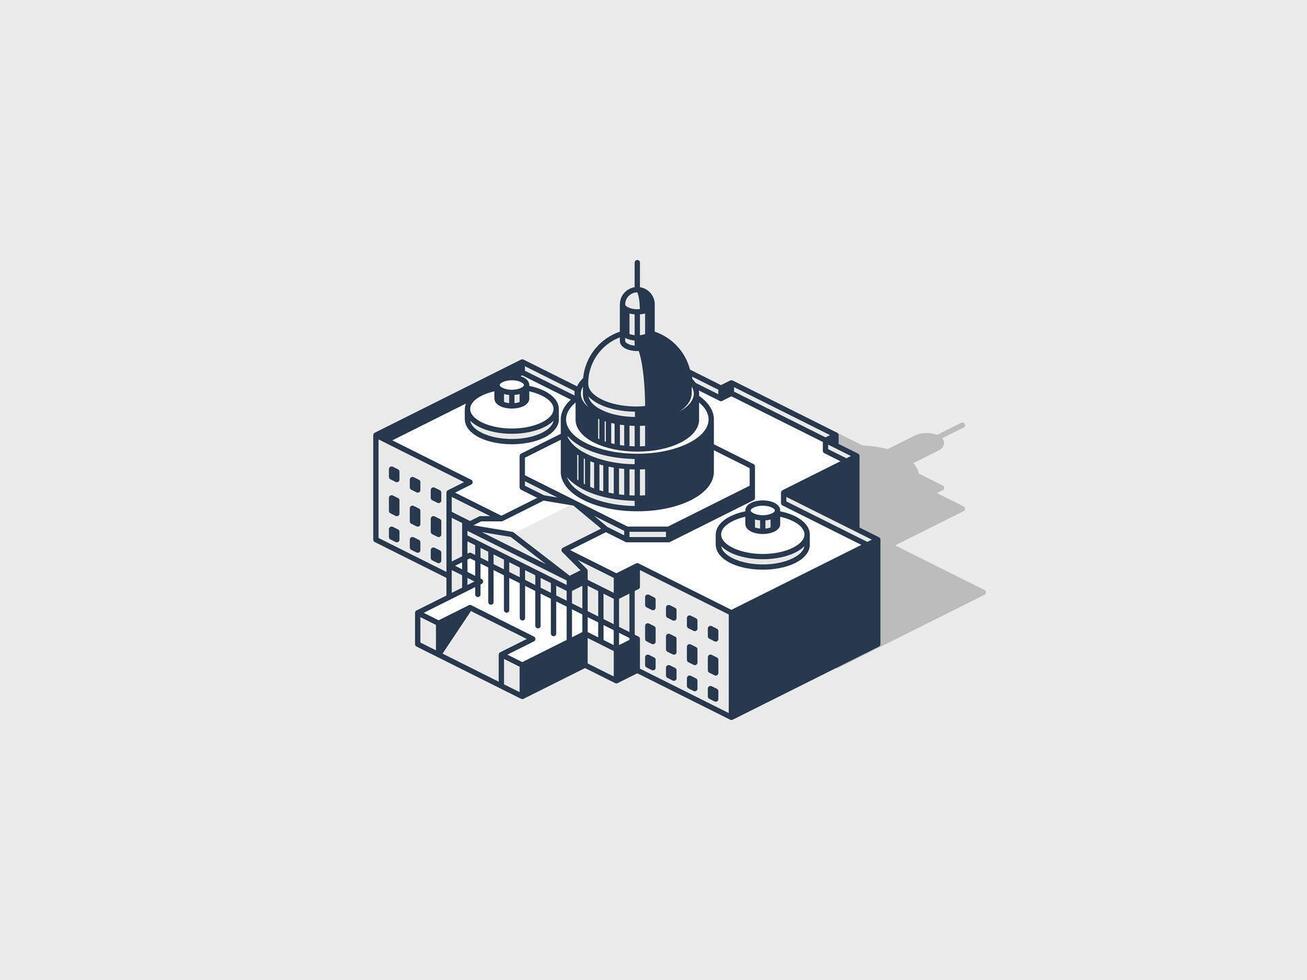 wit huis Capitol gebouw isometrische vector illustratie met schaduw